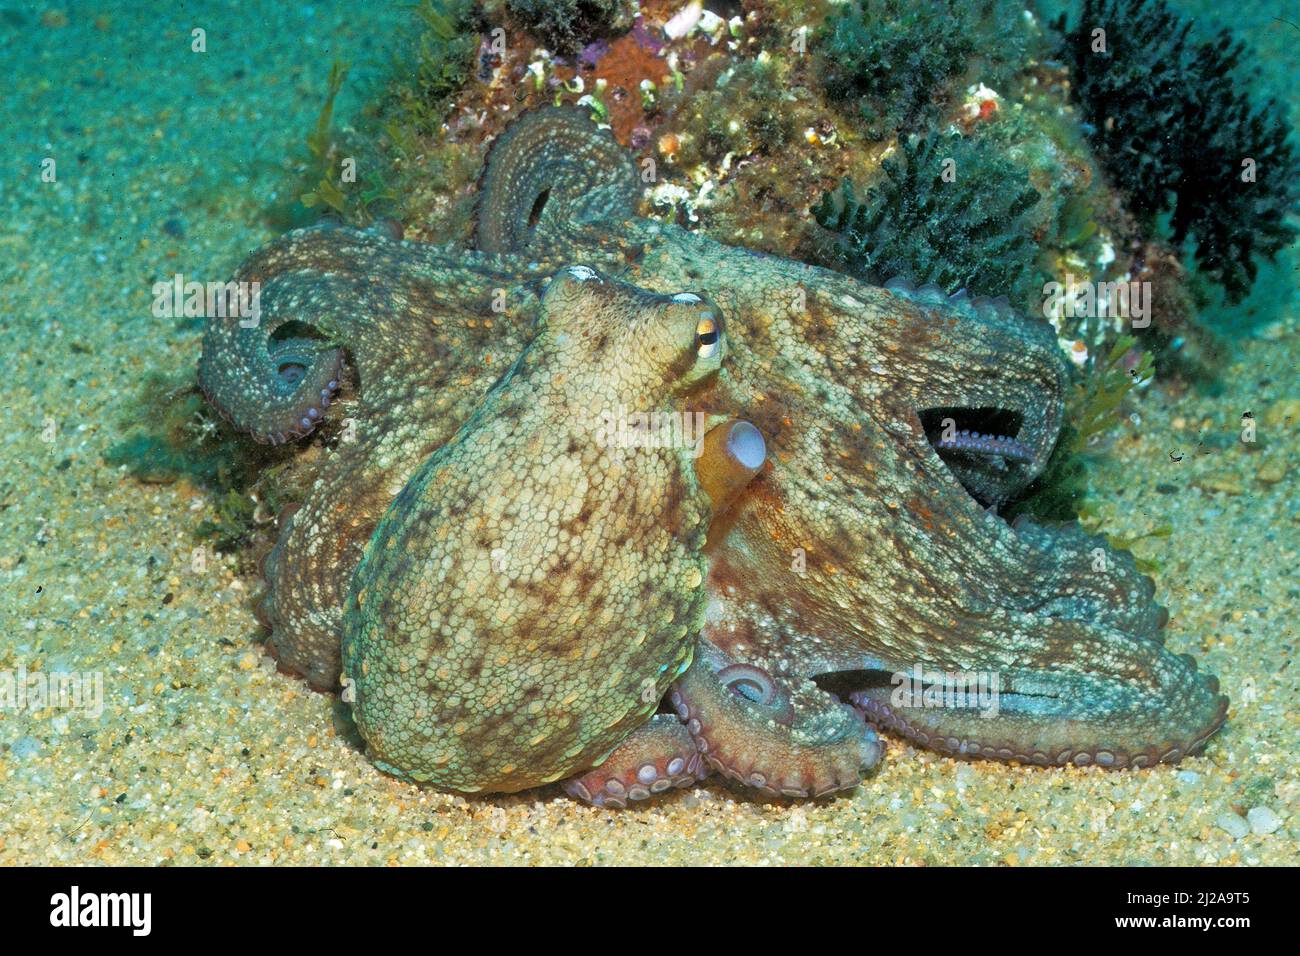 Veined octopus (Octopus marginatus), Egypt, Red sea Stock Photo